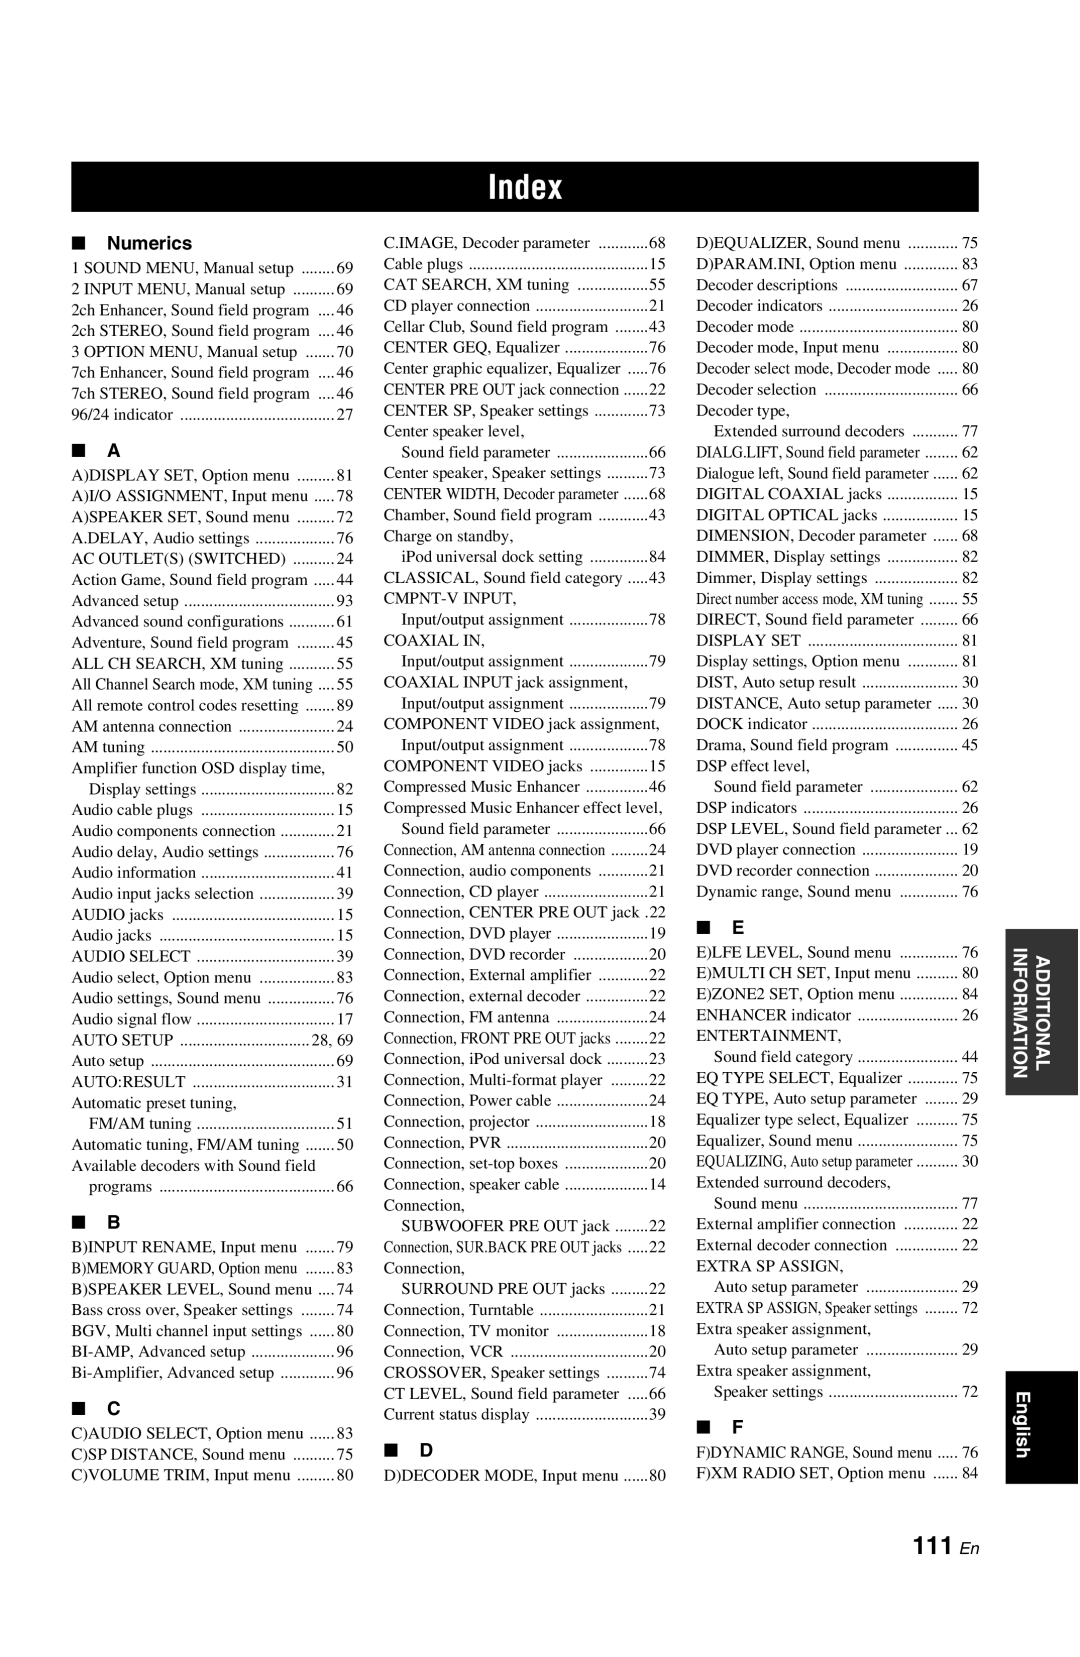 Yamaha RX-V861 owner manual Index, 111 En 